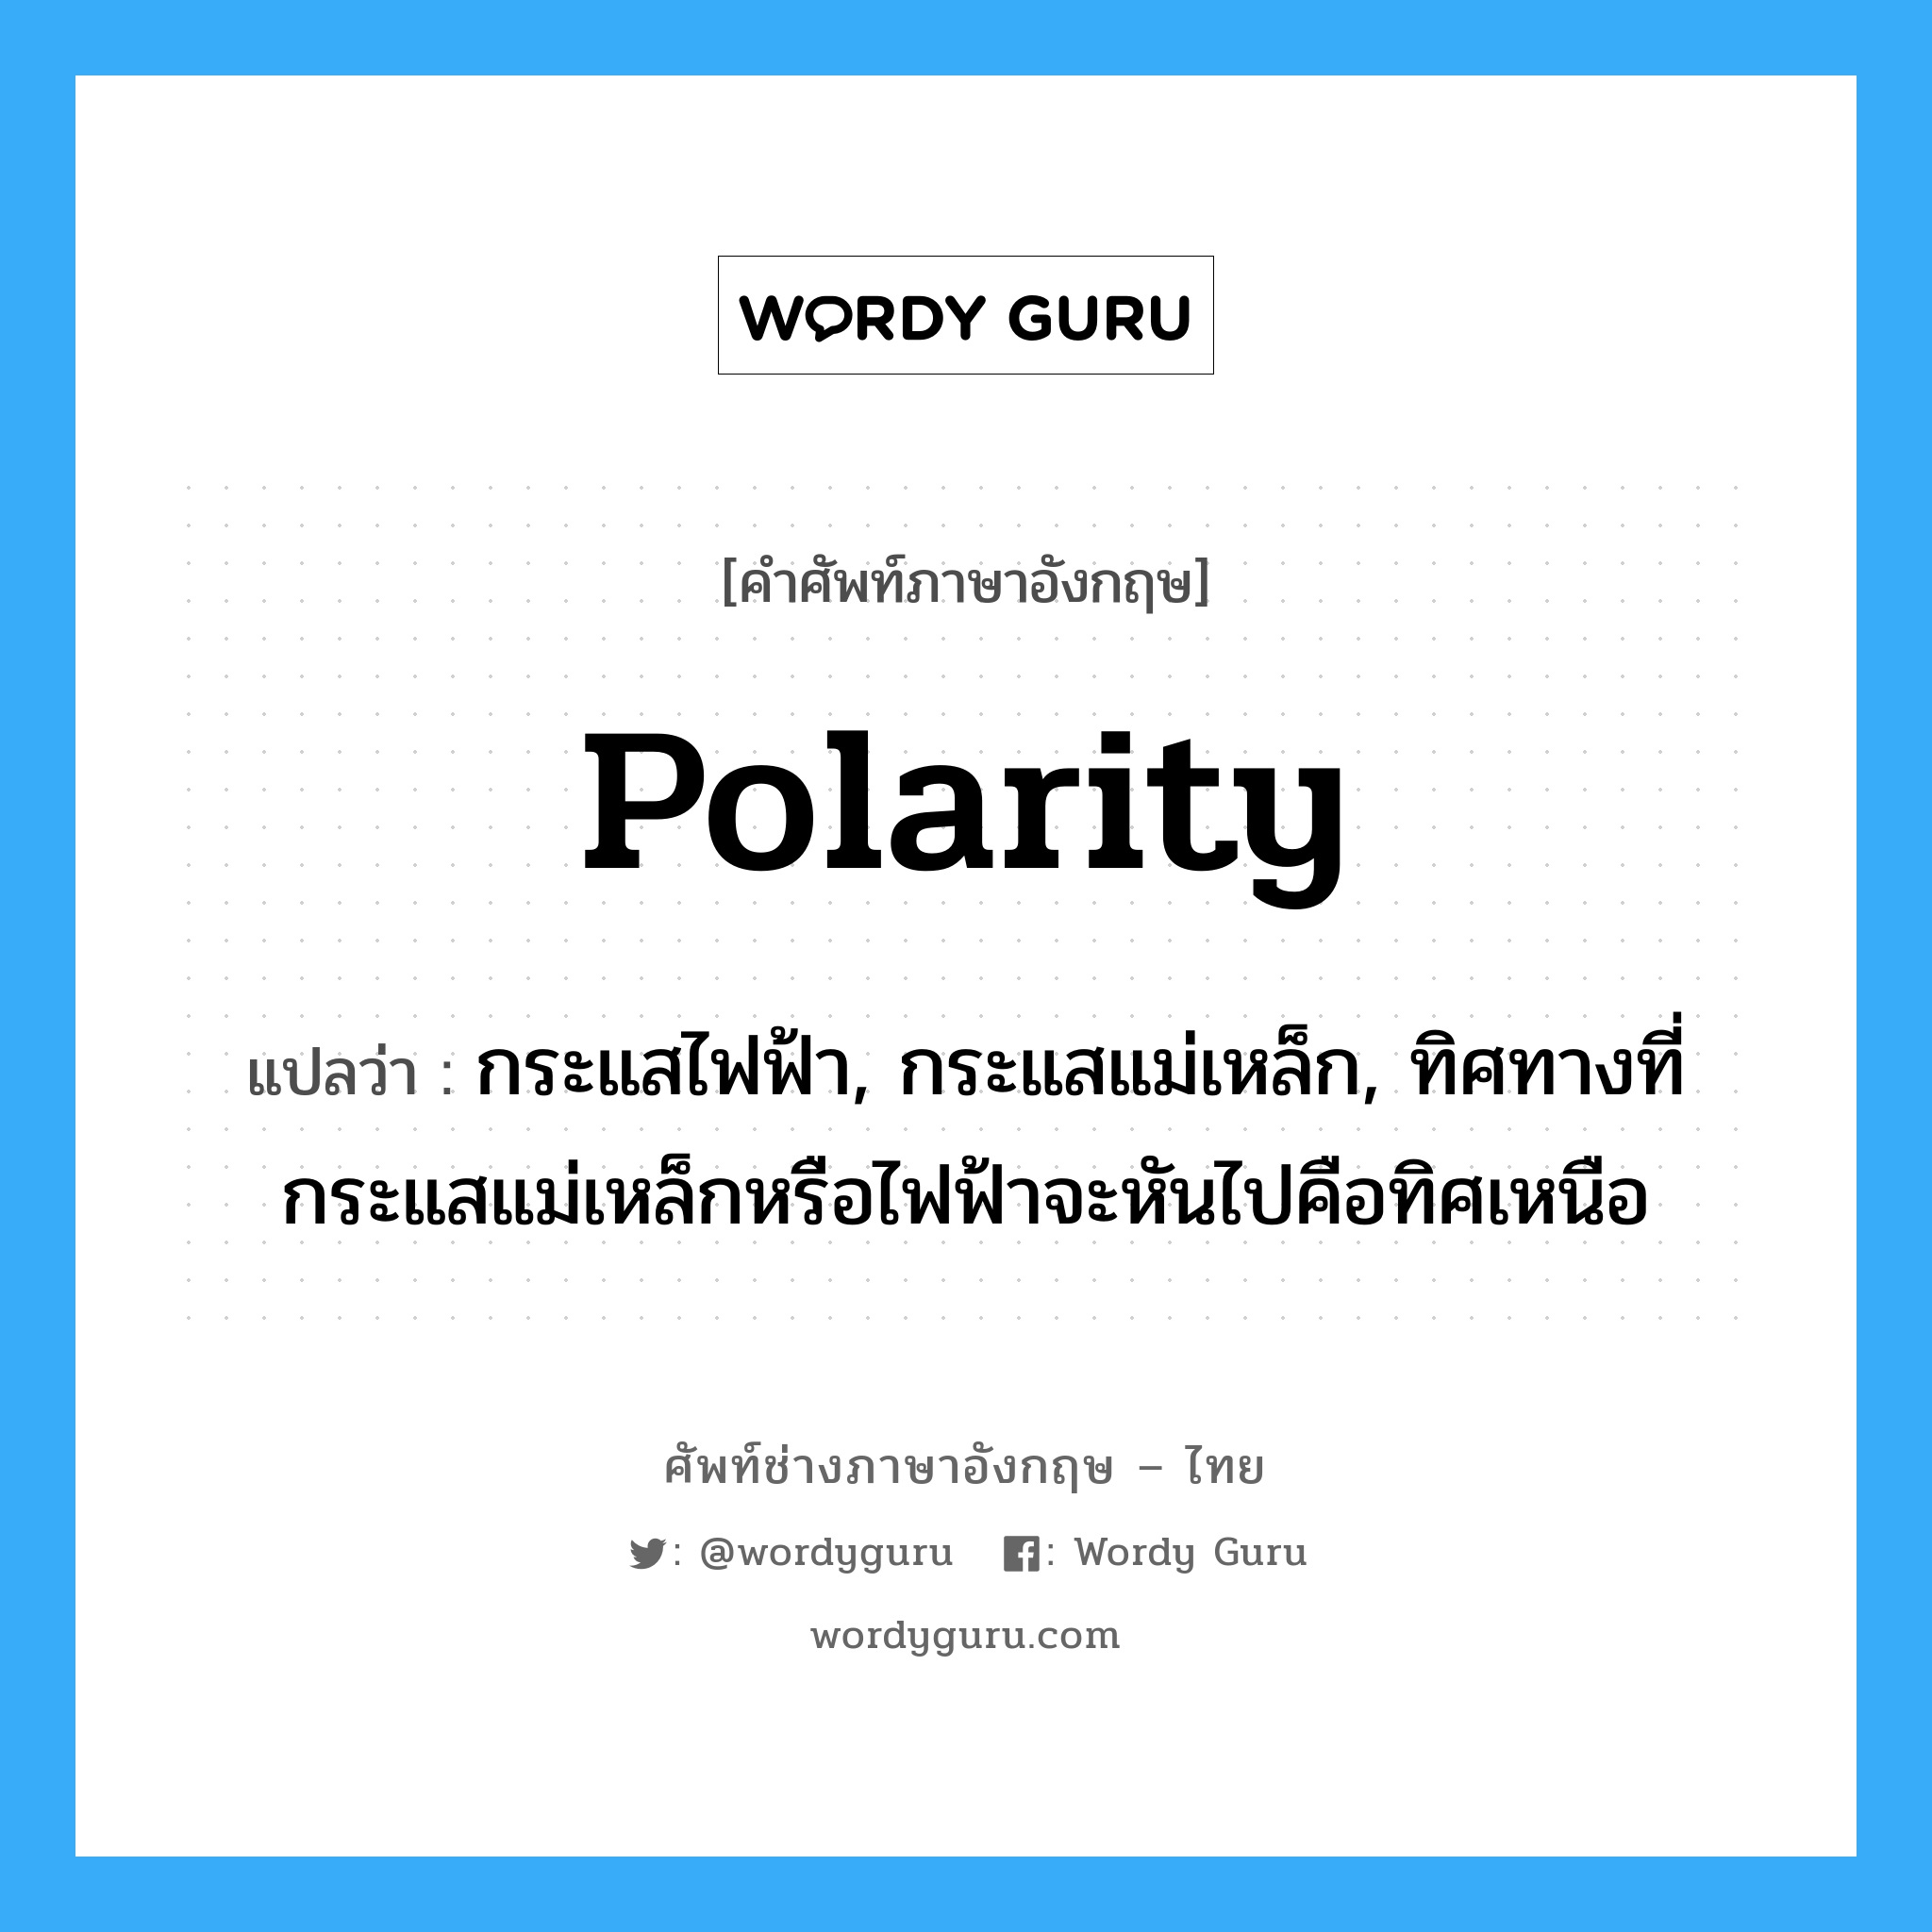 polarity แปลว่า?, คำศัพท์ช่างภาษาอังกฤษ - ไทย polarity คำศัพท์ภาษาอังกฤษ polarity แปลว่า กระแสไฟฟ้า, กระแสแม่เหล็ก, ทิศทางที่กระแสแม่เหล็กหรือไฟฟ้าจะหันไปคือทิศเหนือ